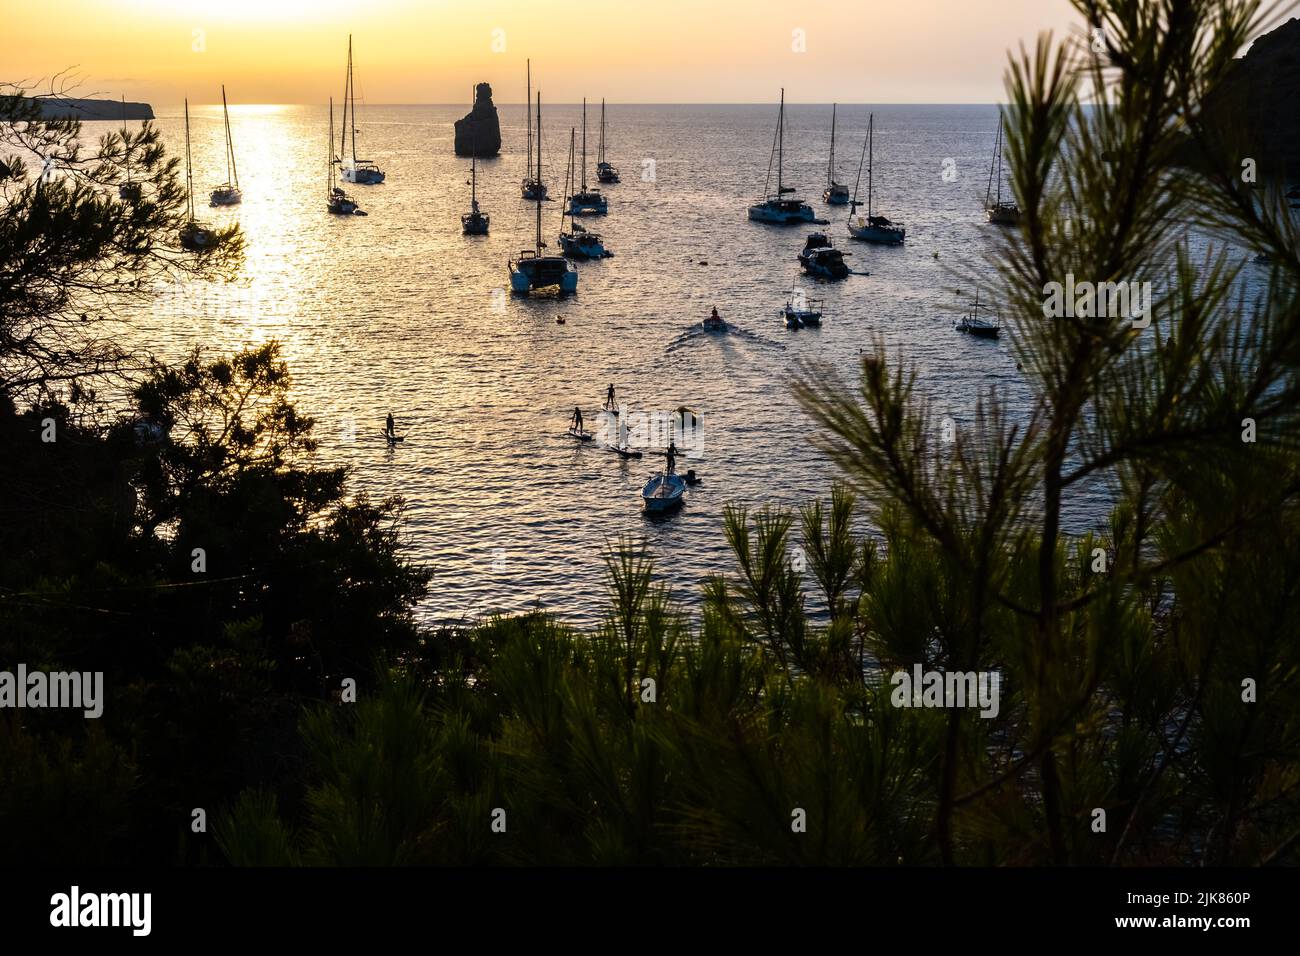 Touristen üben Paddelsurfing zwischen Booten, die in einer Bucht während des Sonnenuntergangs festgemacht sind. Stockfoto